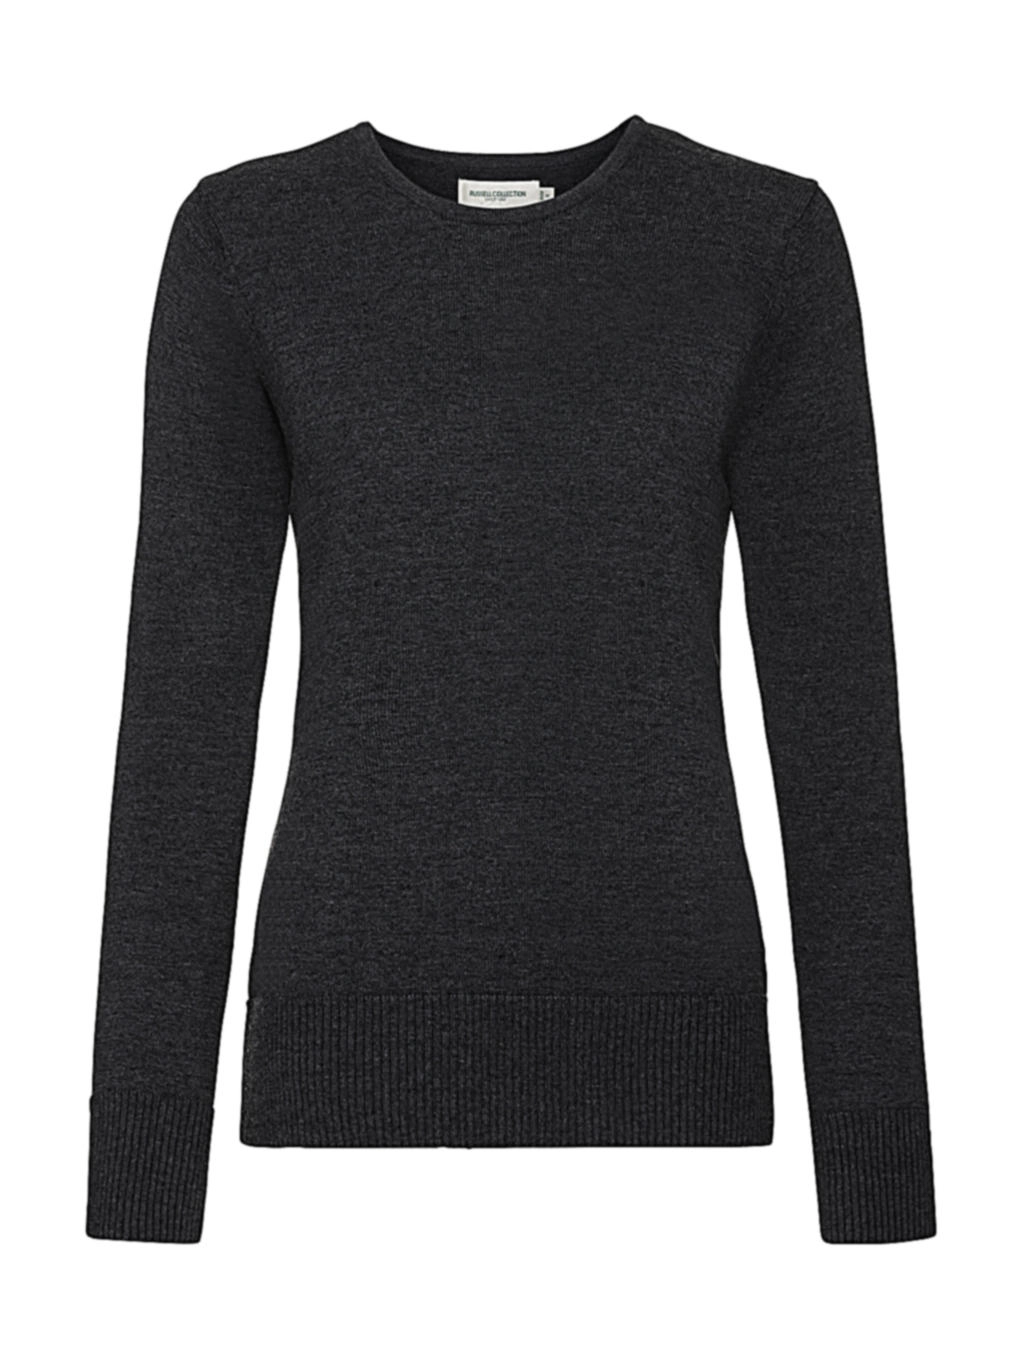 Ladies` Crew Neck Knitted Pullover zum Besticken und Bedrucken in der Farbe Charcoal Marl mit Ihren Logo, Schriftzug oder Motiv.